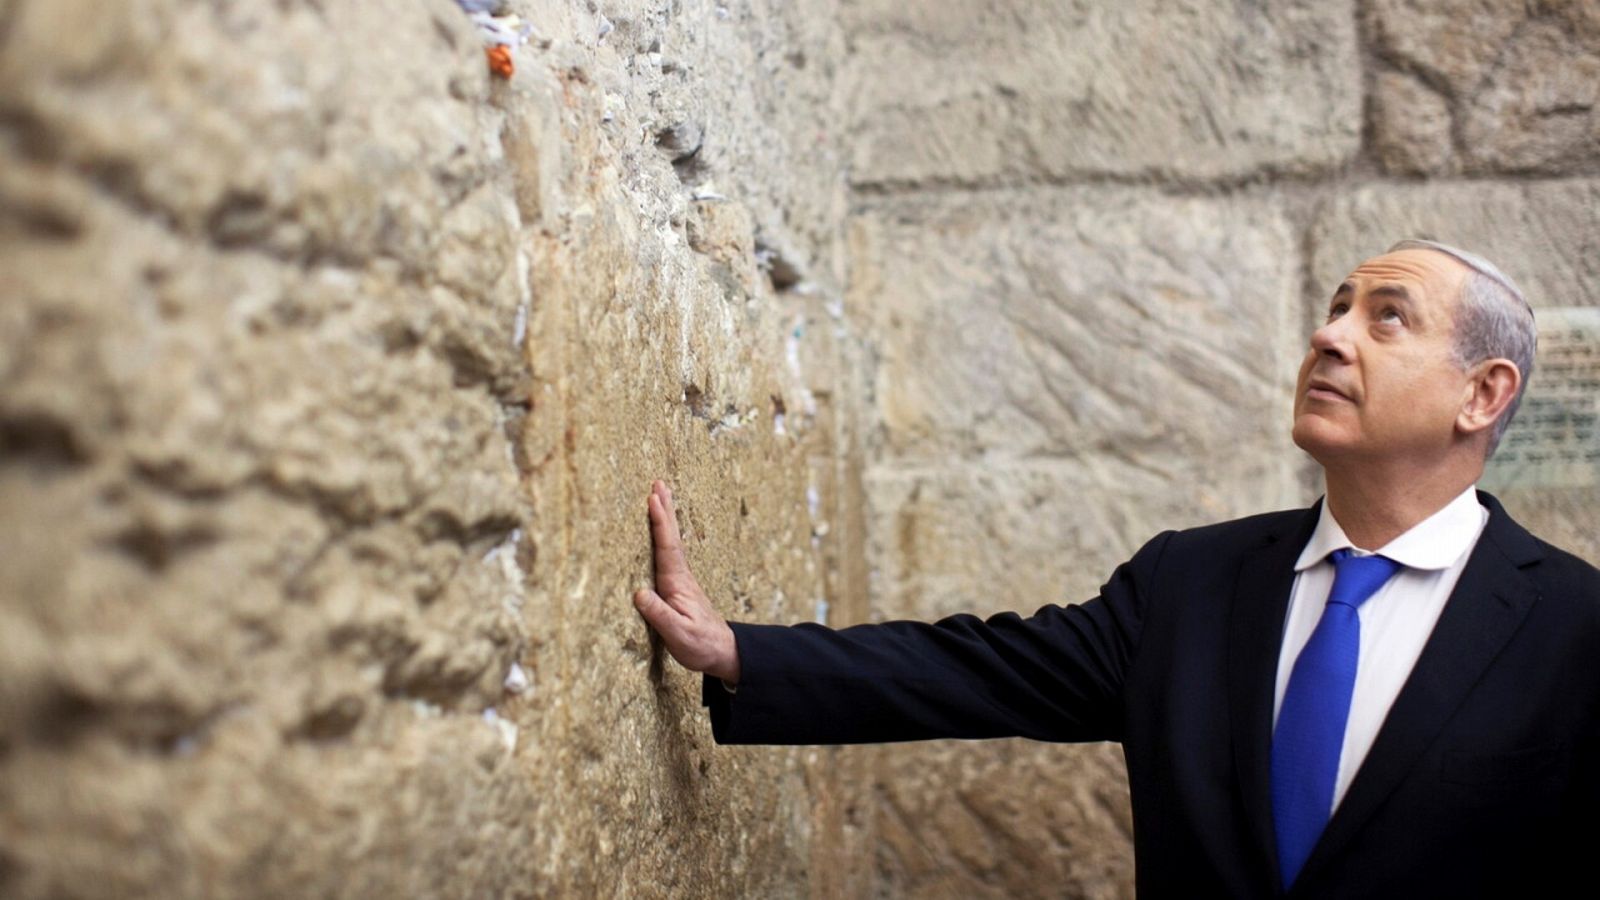 Foto de archivo de Benjamín Netanyahu, primer ministro israelí, en el Muro de las Lamentaciones de Jerusalén. REUTERS/Uriel Sinai